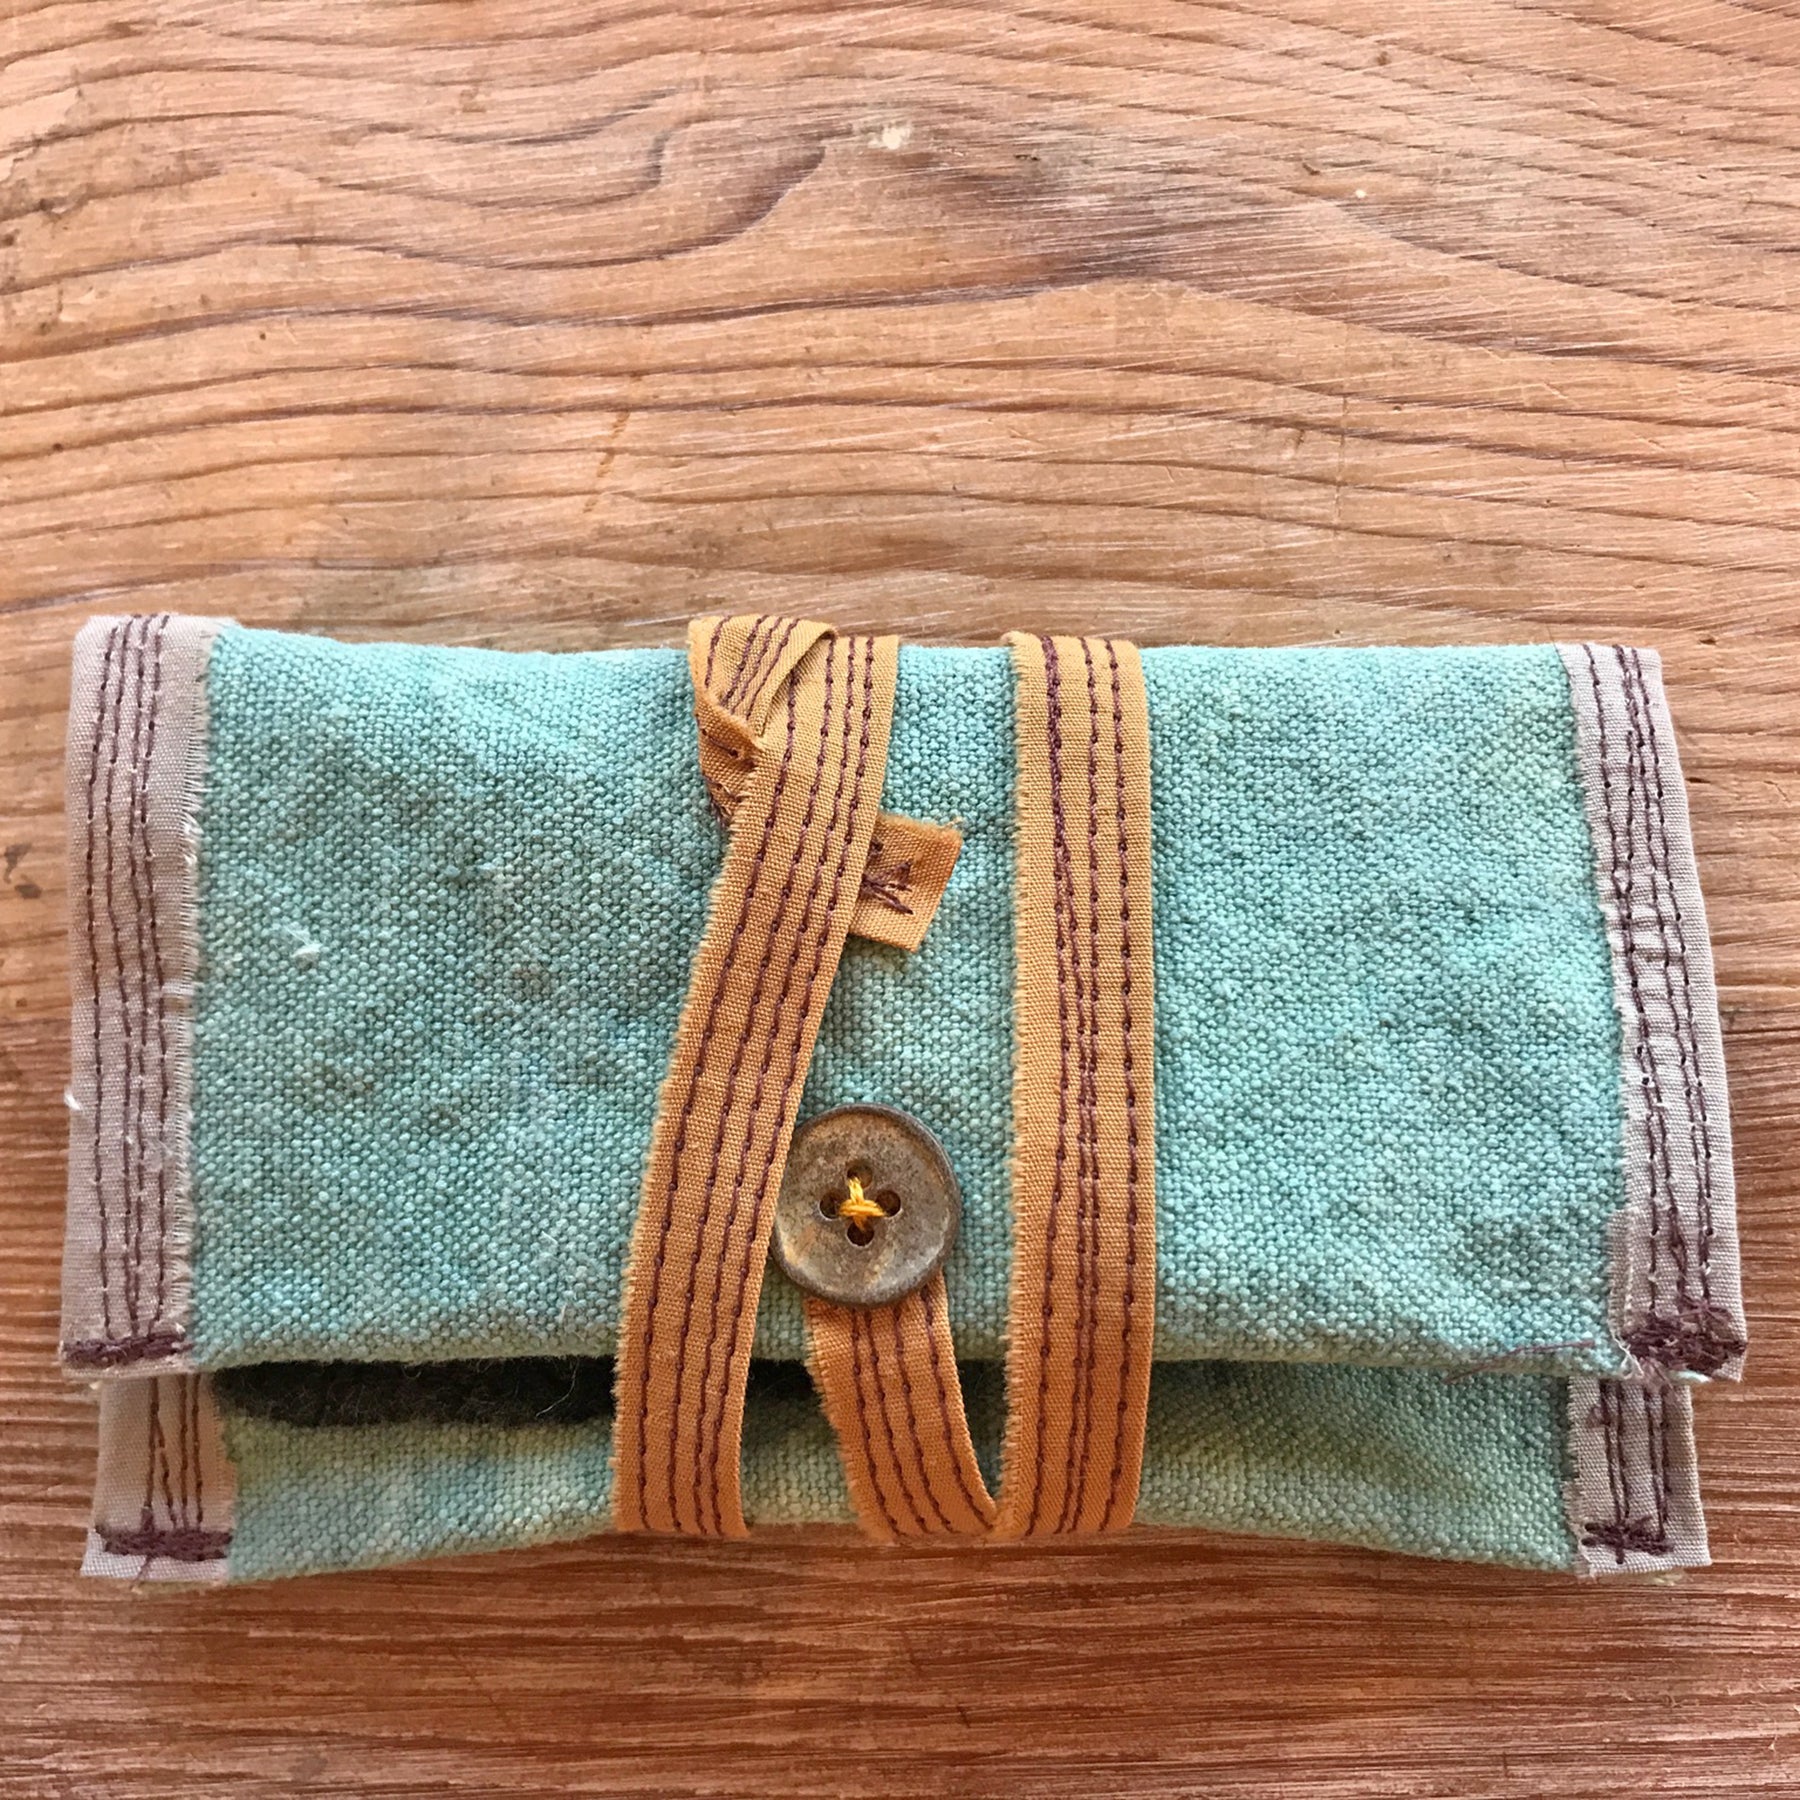 Pocket Sewing Kit